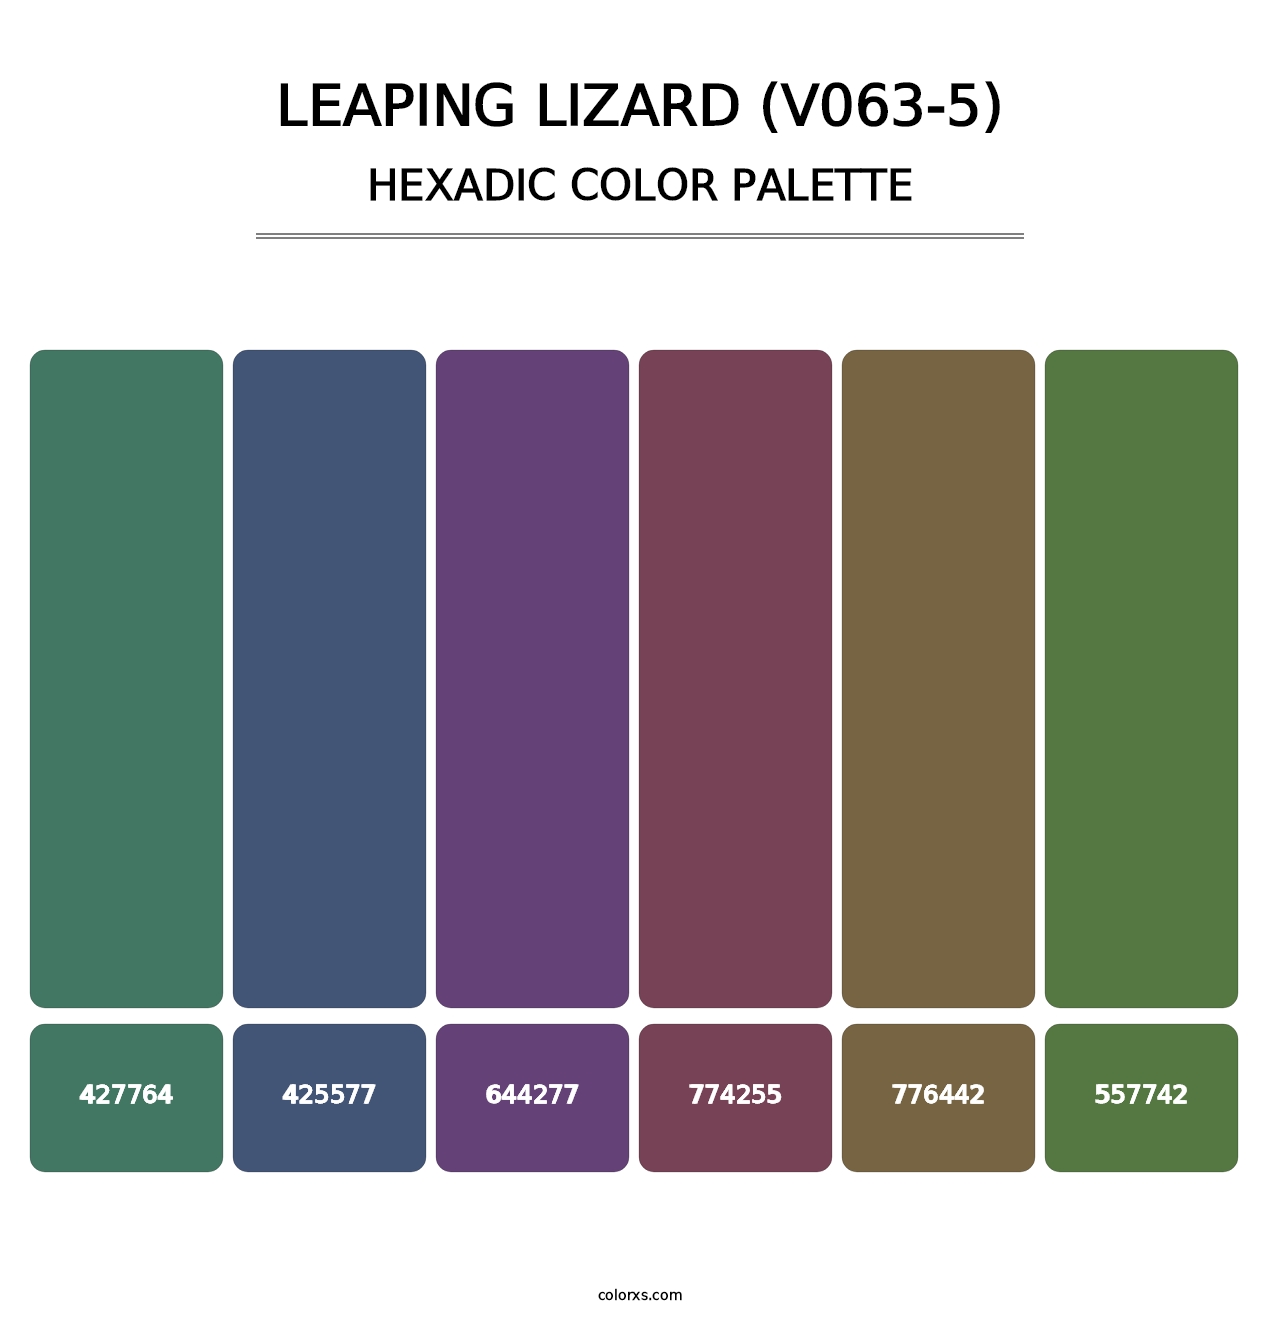 Leaping Lizard (V063-5) - Hexadic Color Palette